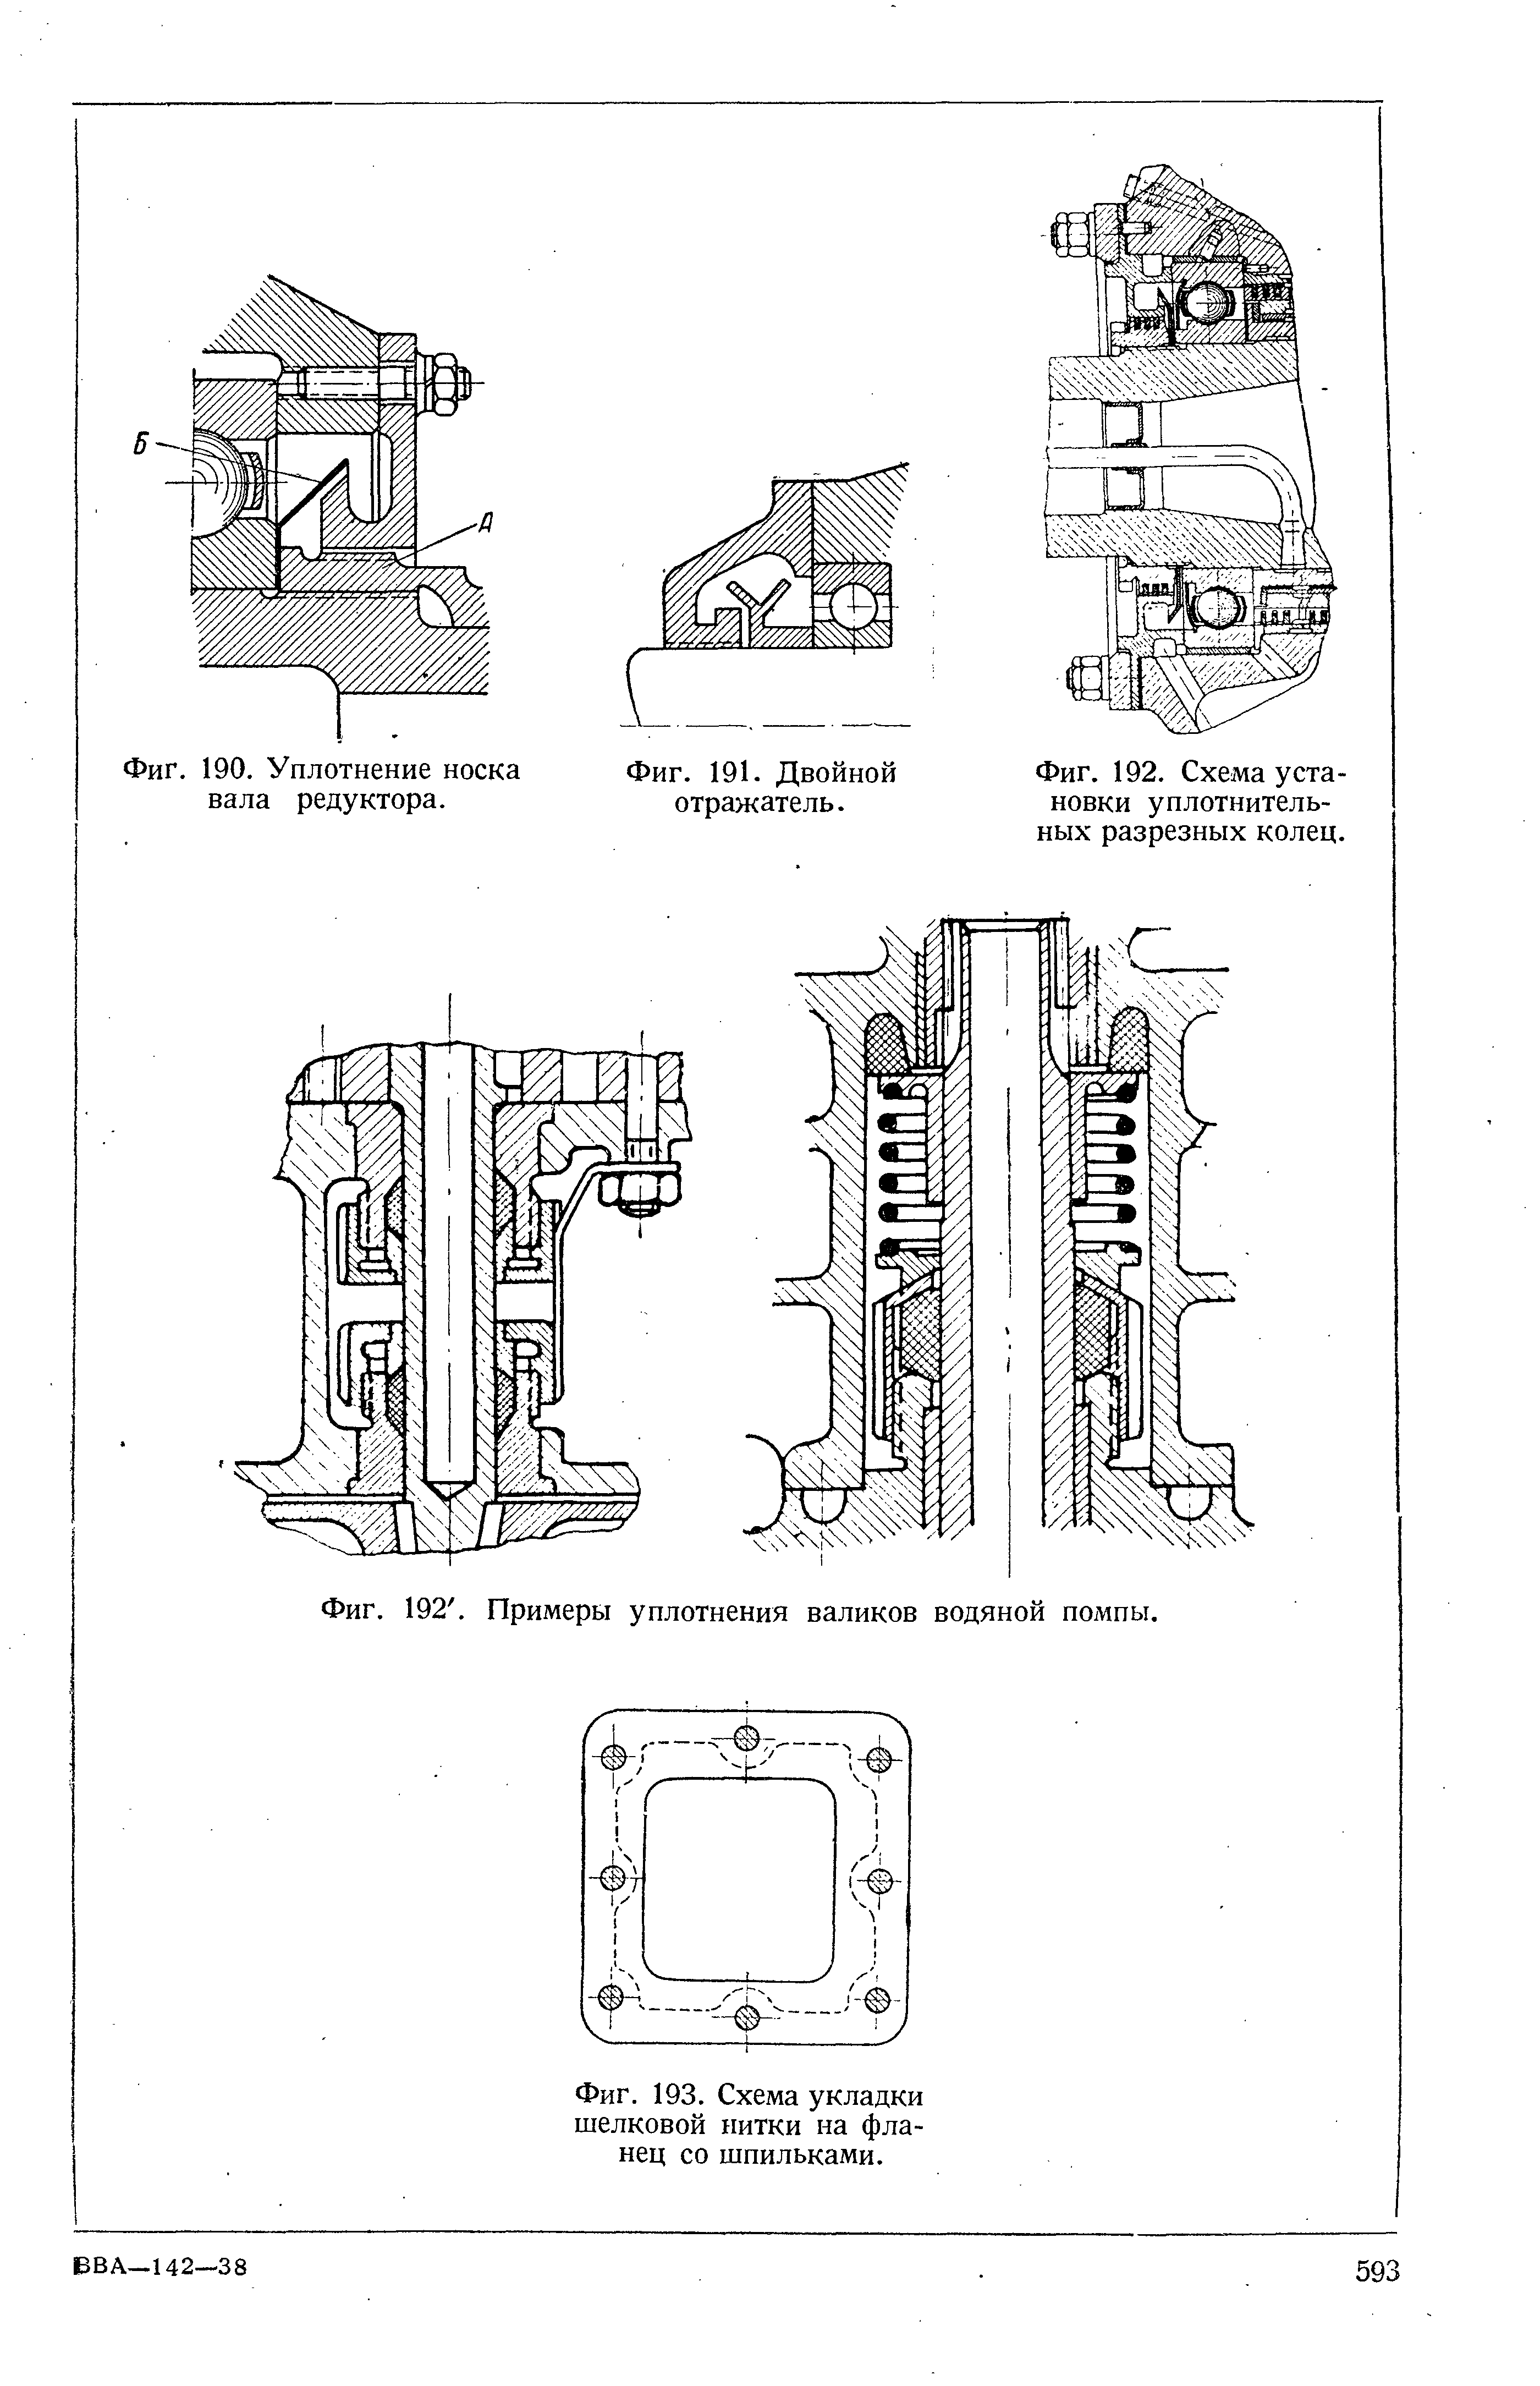 Фиг. 192. Примеры уплотнения валиков водяной помпы.
